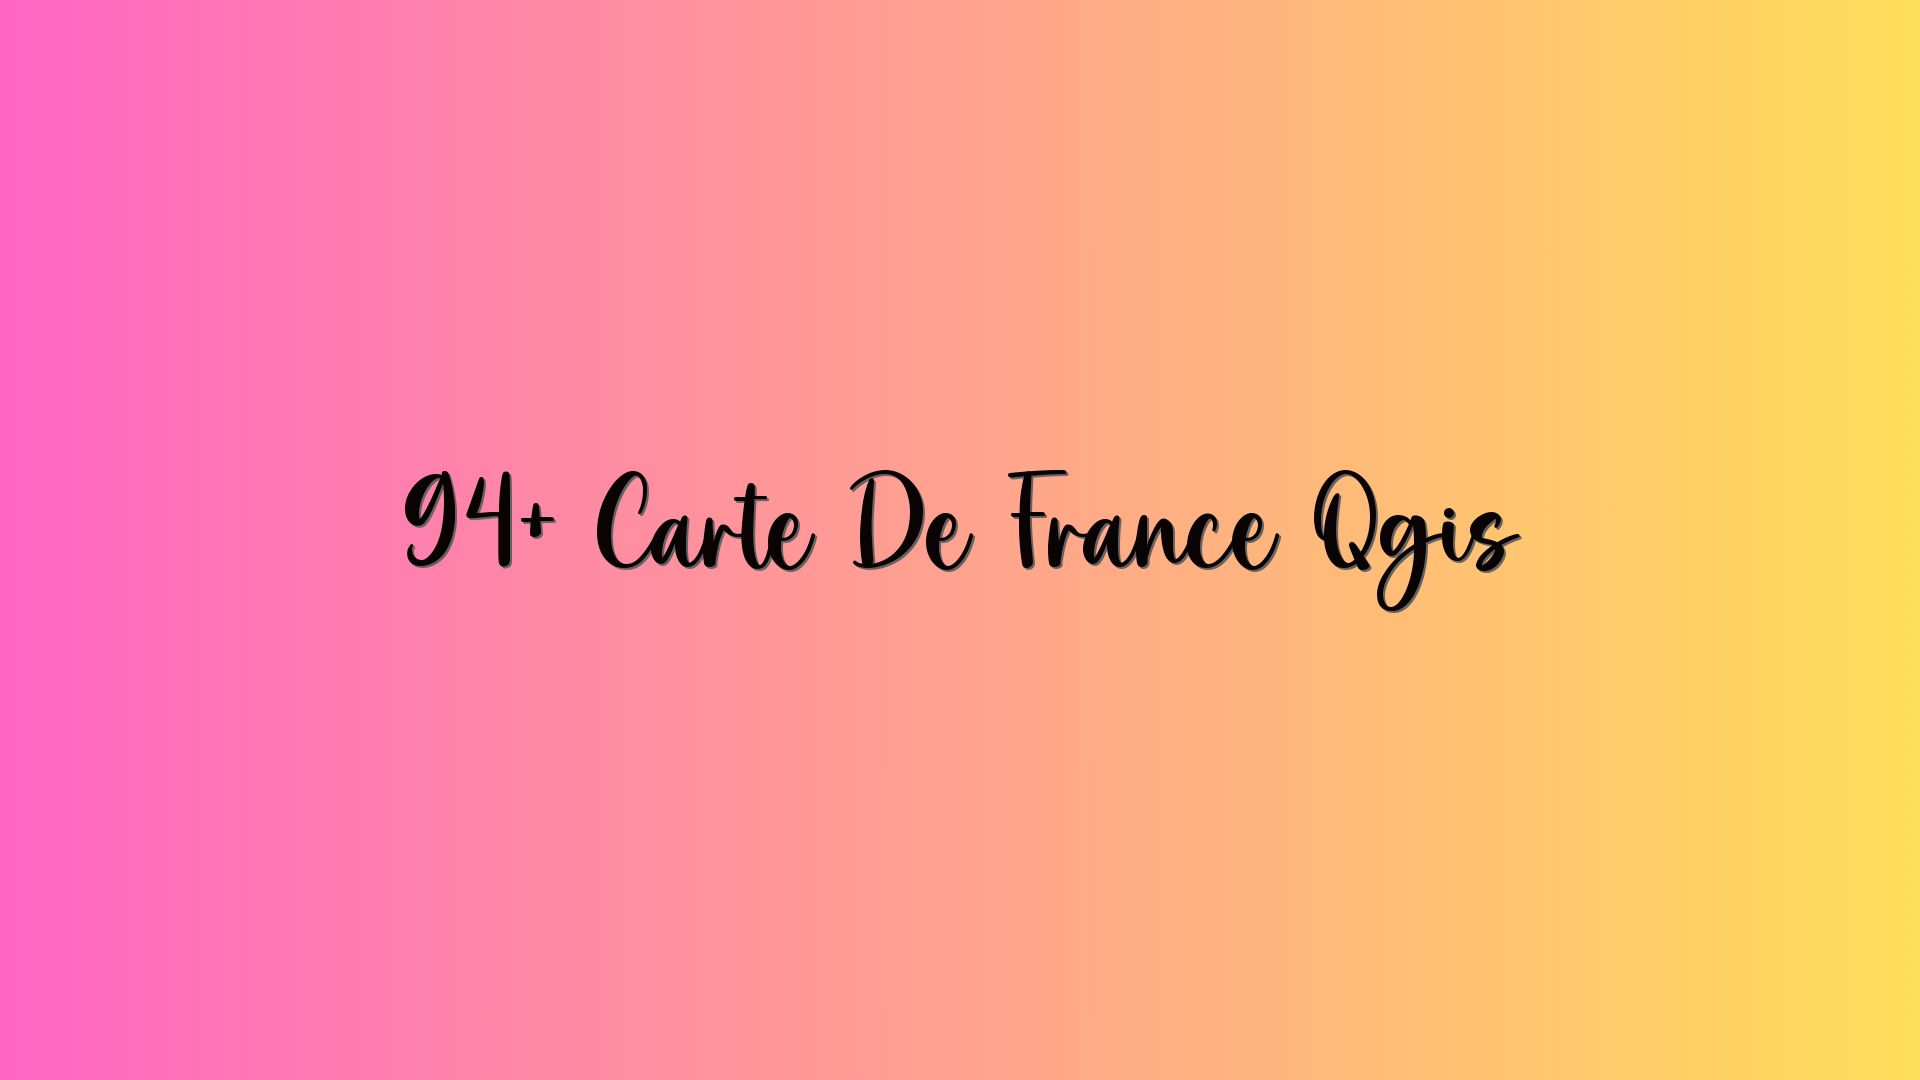 94+ Carte De France Qgis